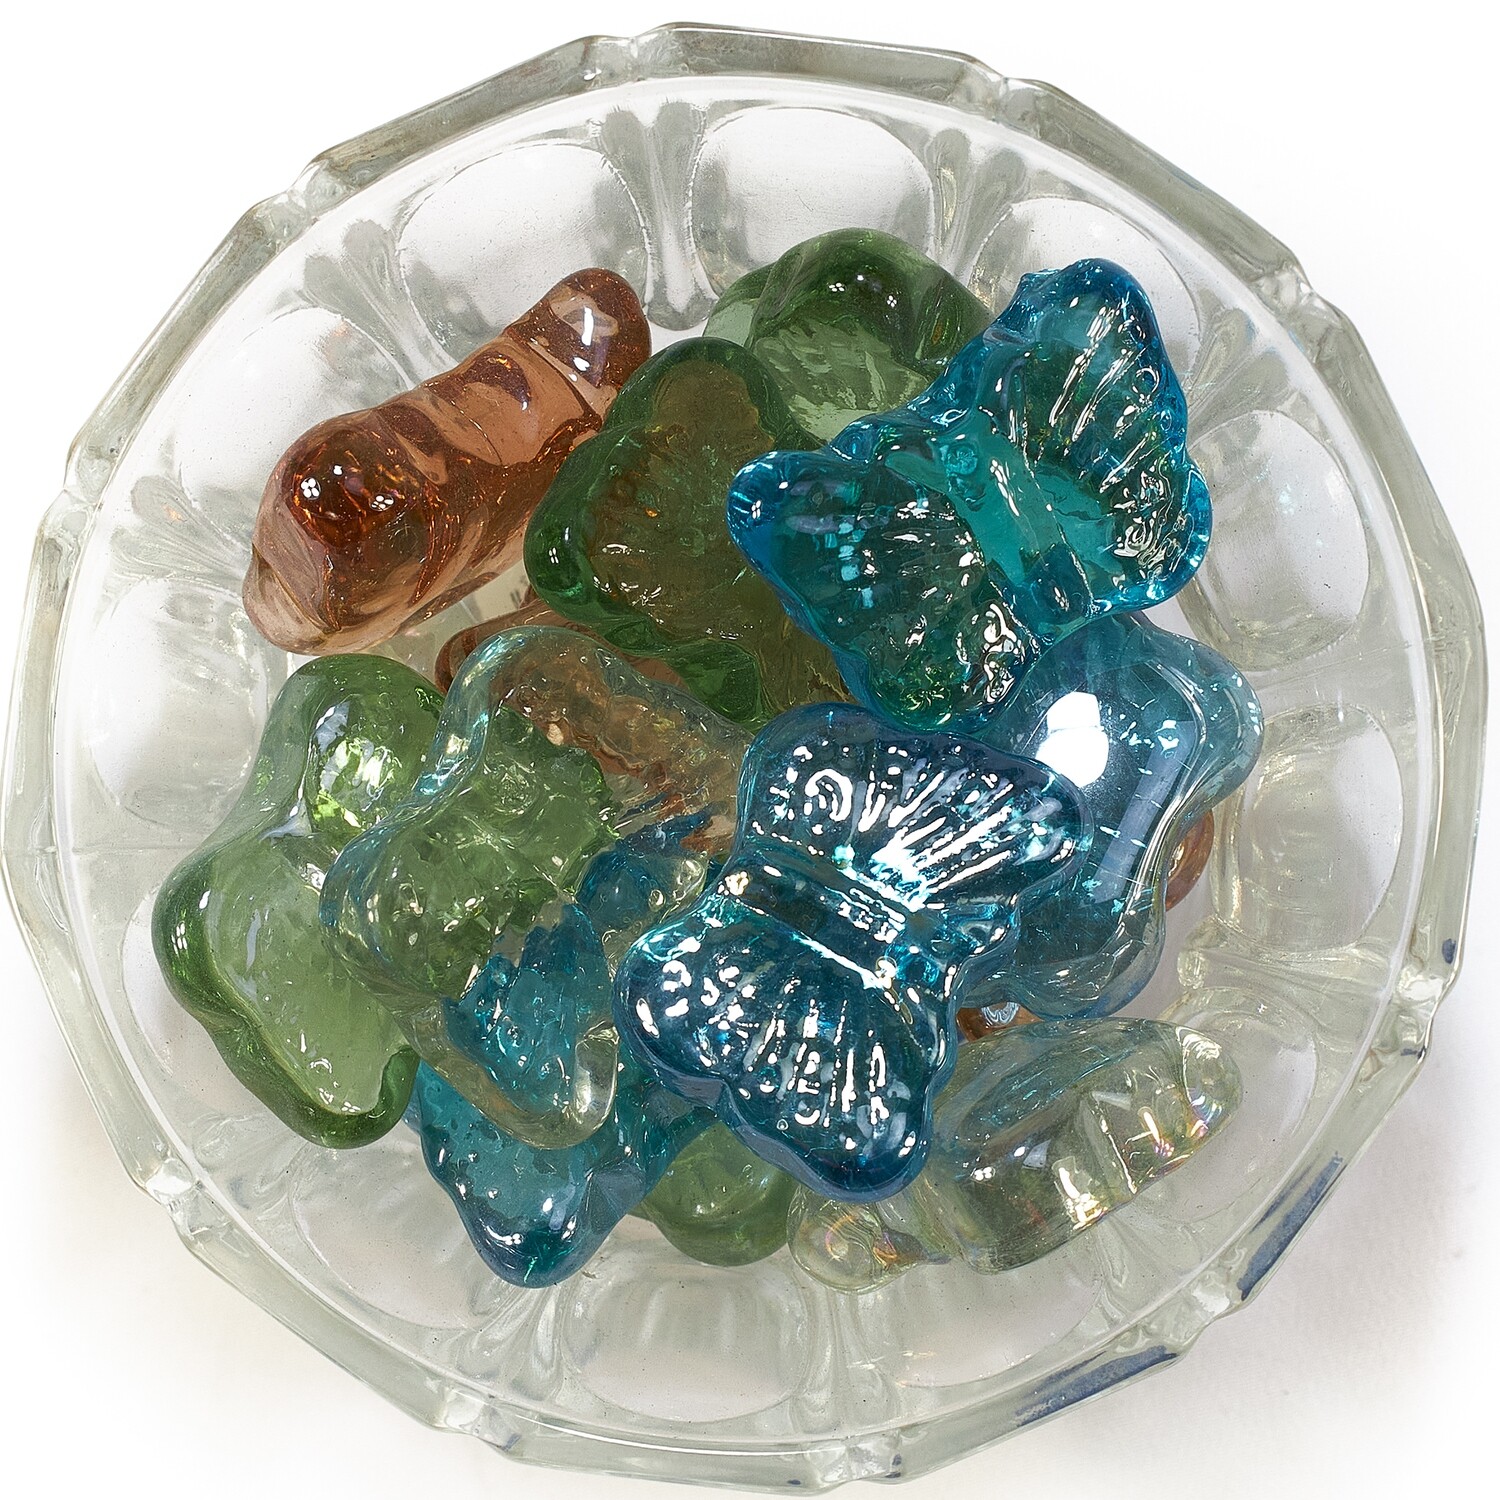 Камни KUN LONG декоративные, стеклянные, в виде бабочек, для аквариума (в мешке 5кг)